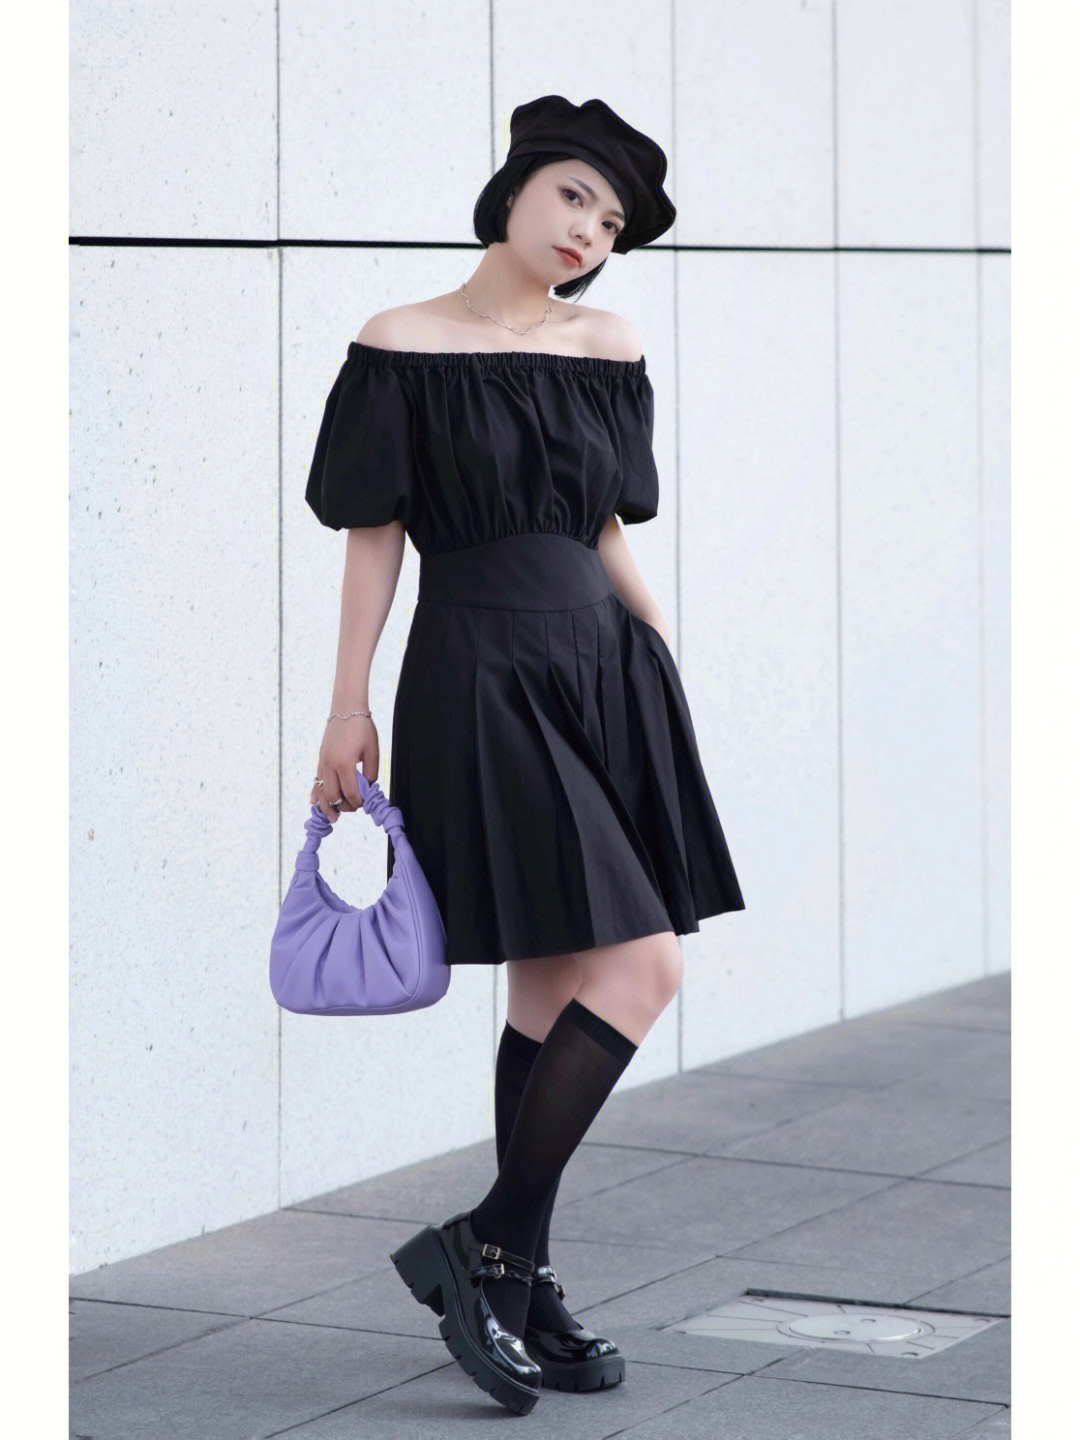 夏季穿搭可盐可甜黑色连衣裙紫黑搭配